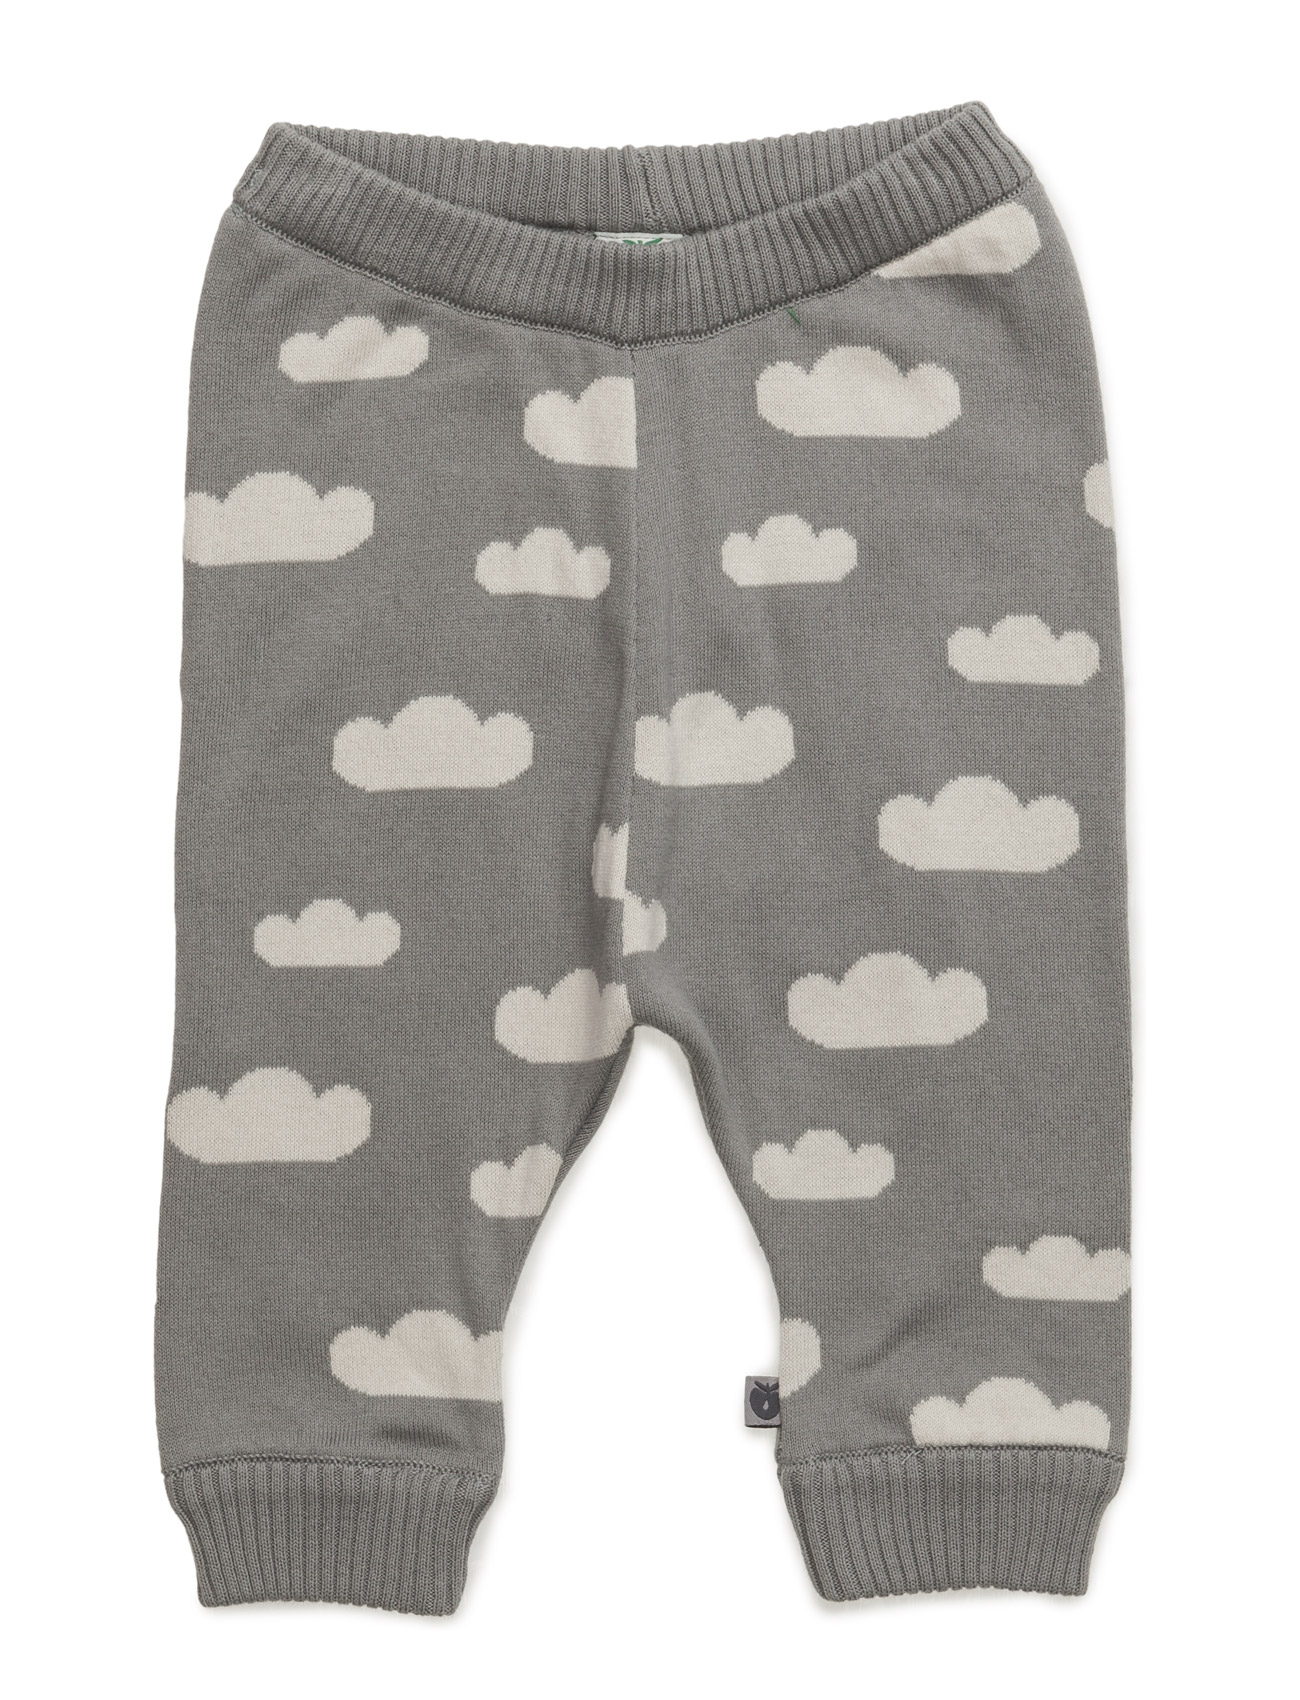 Pants Knit. Cloud